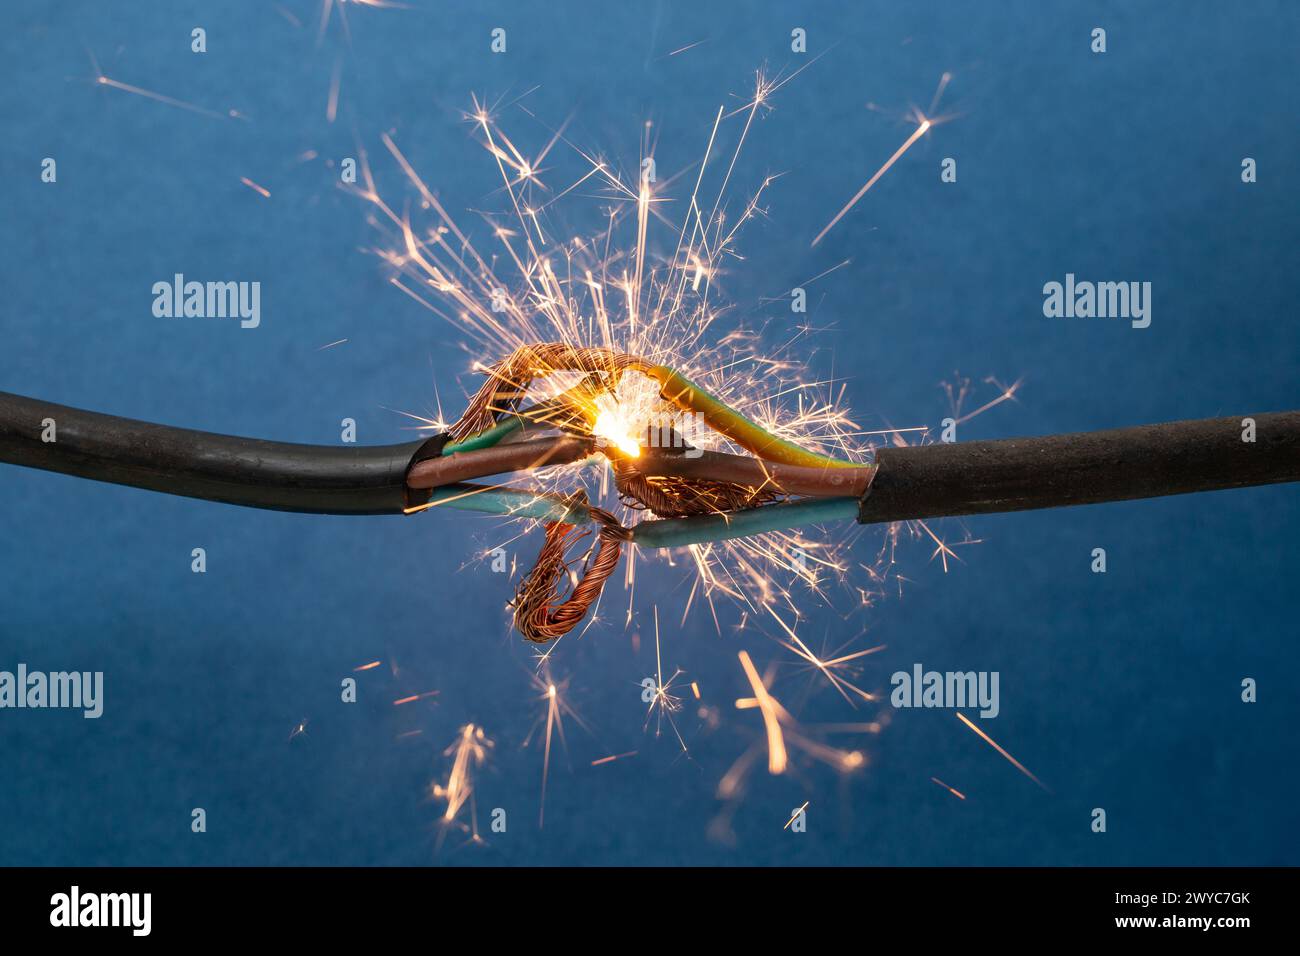 Funkenexplosion zwischen elektrischen Kabeln, auf blauem Hintergrund, Brandschutzkonzept Stockfoto